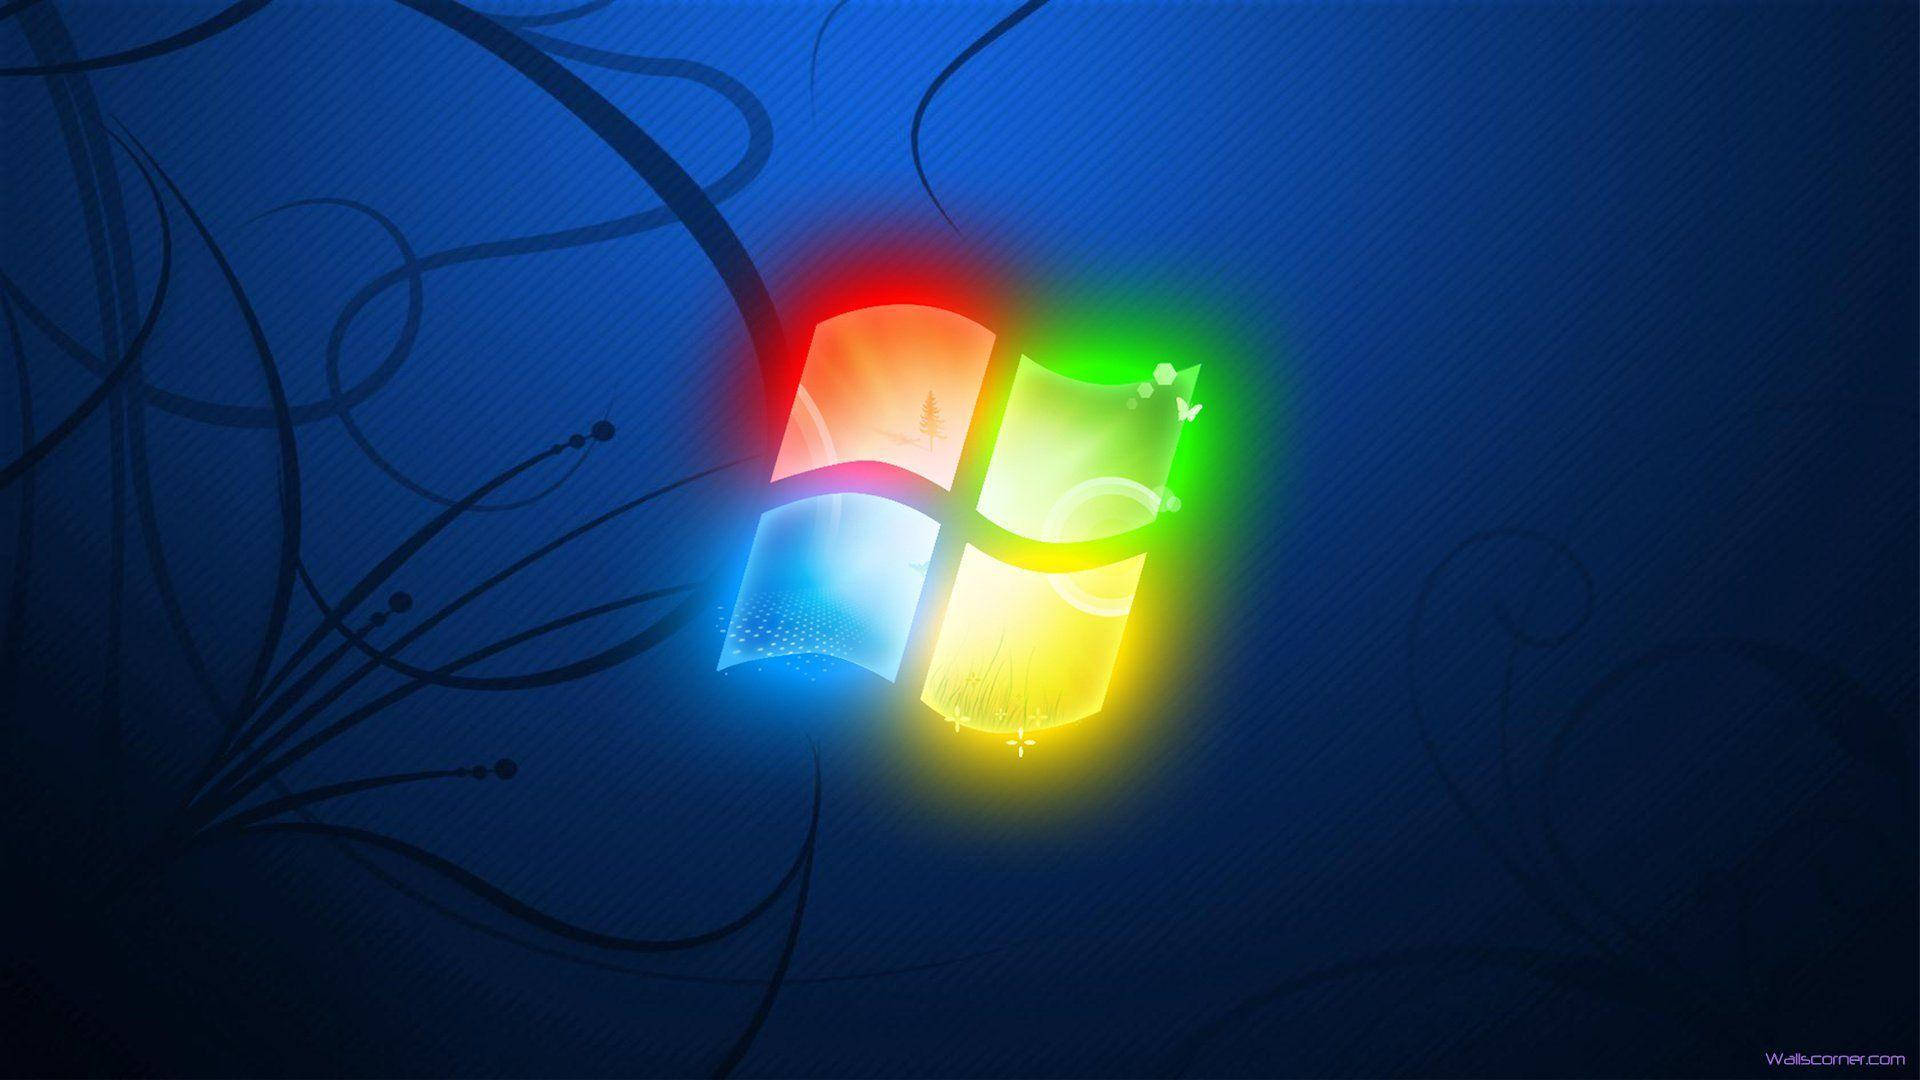 Windows 7 Logo In Neon Background